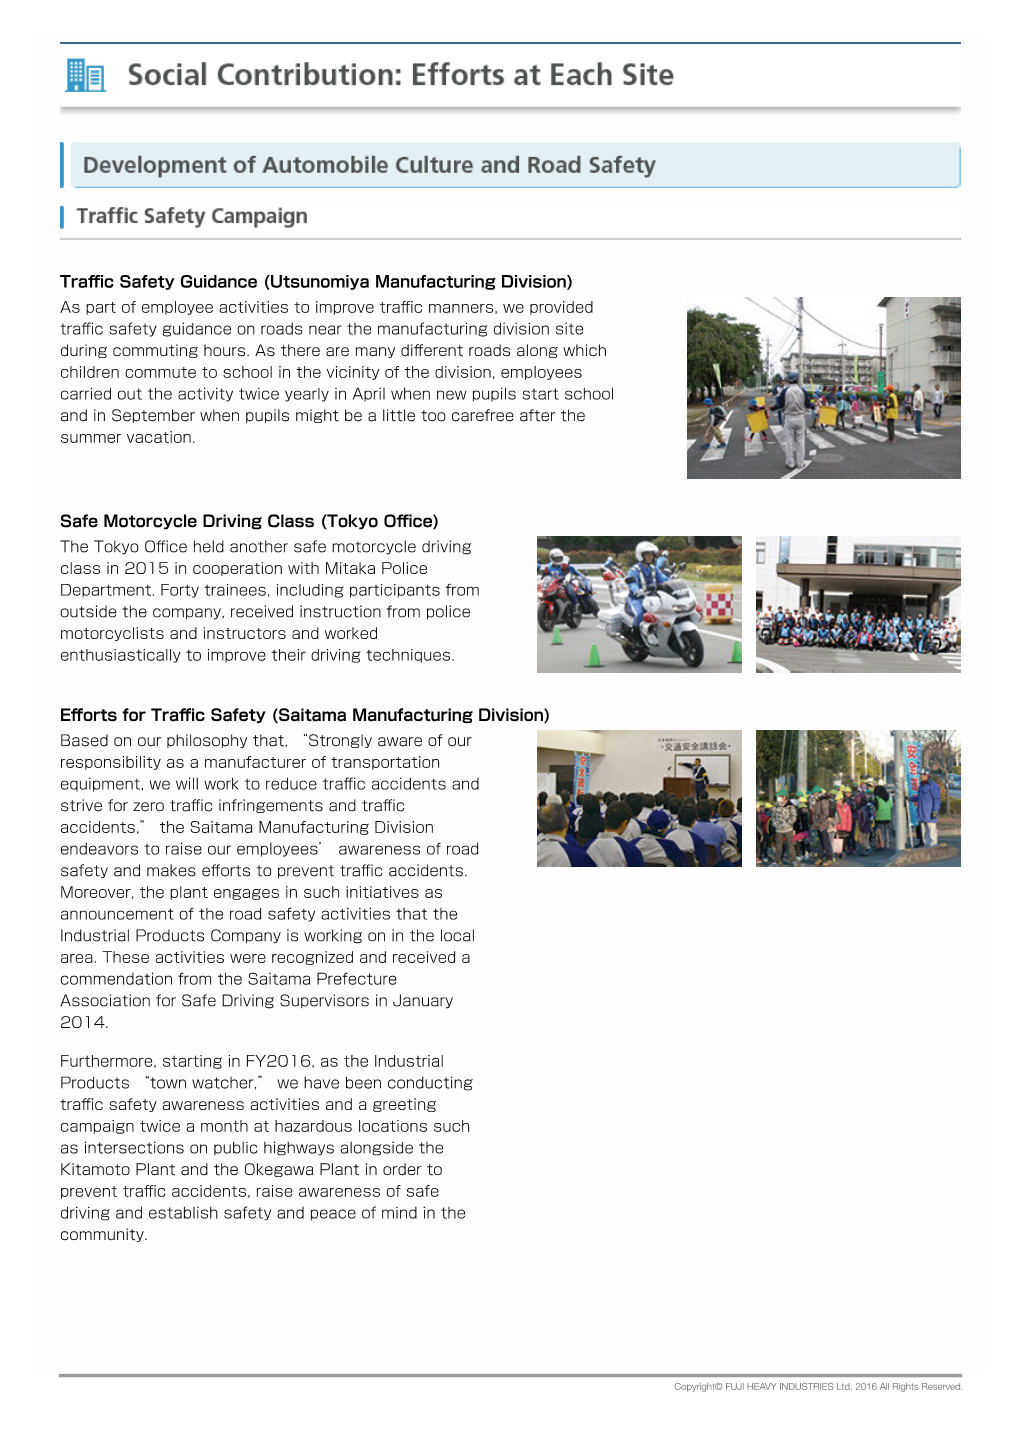 Traffic Safety Guidance (Utsunomiya Manufacturing Division) Safe